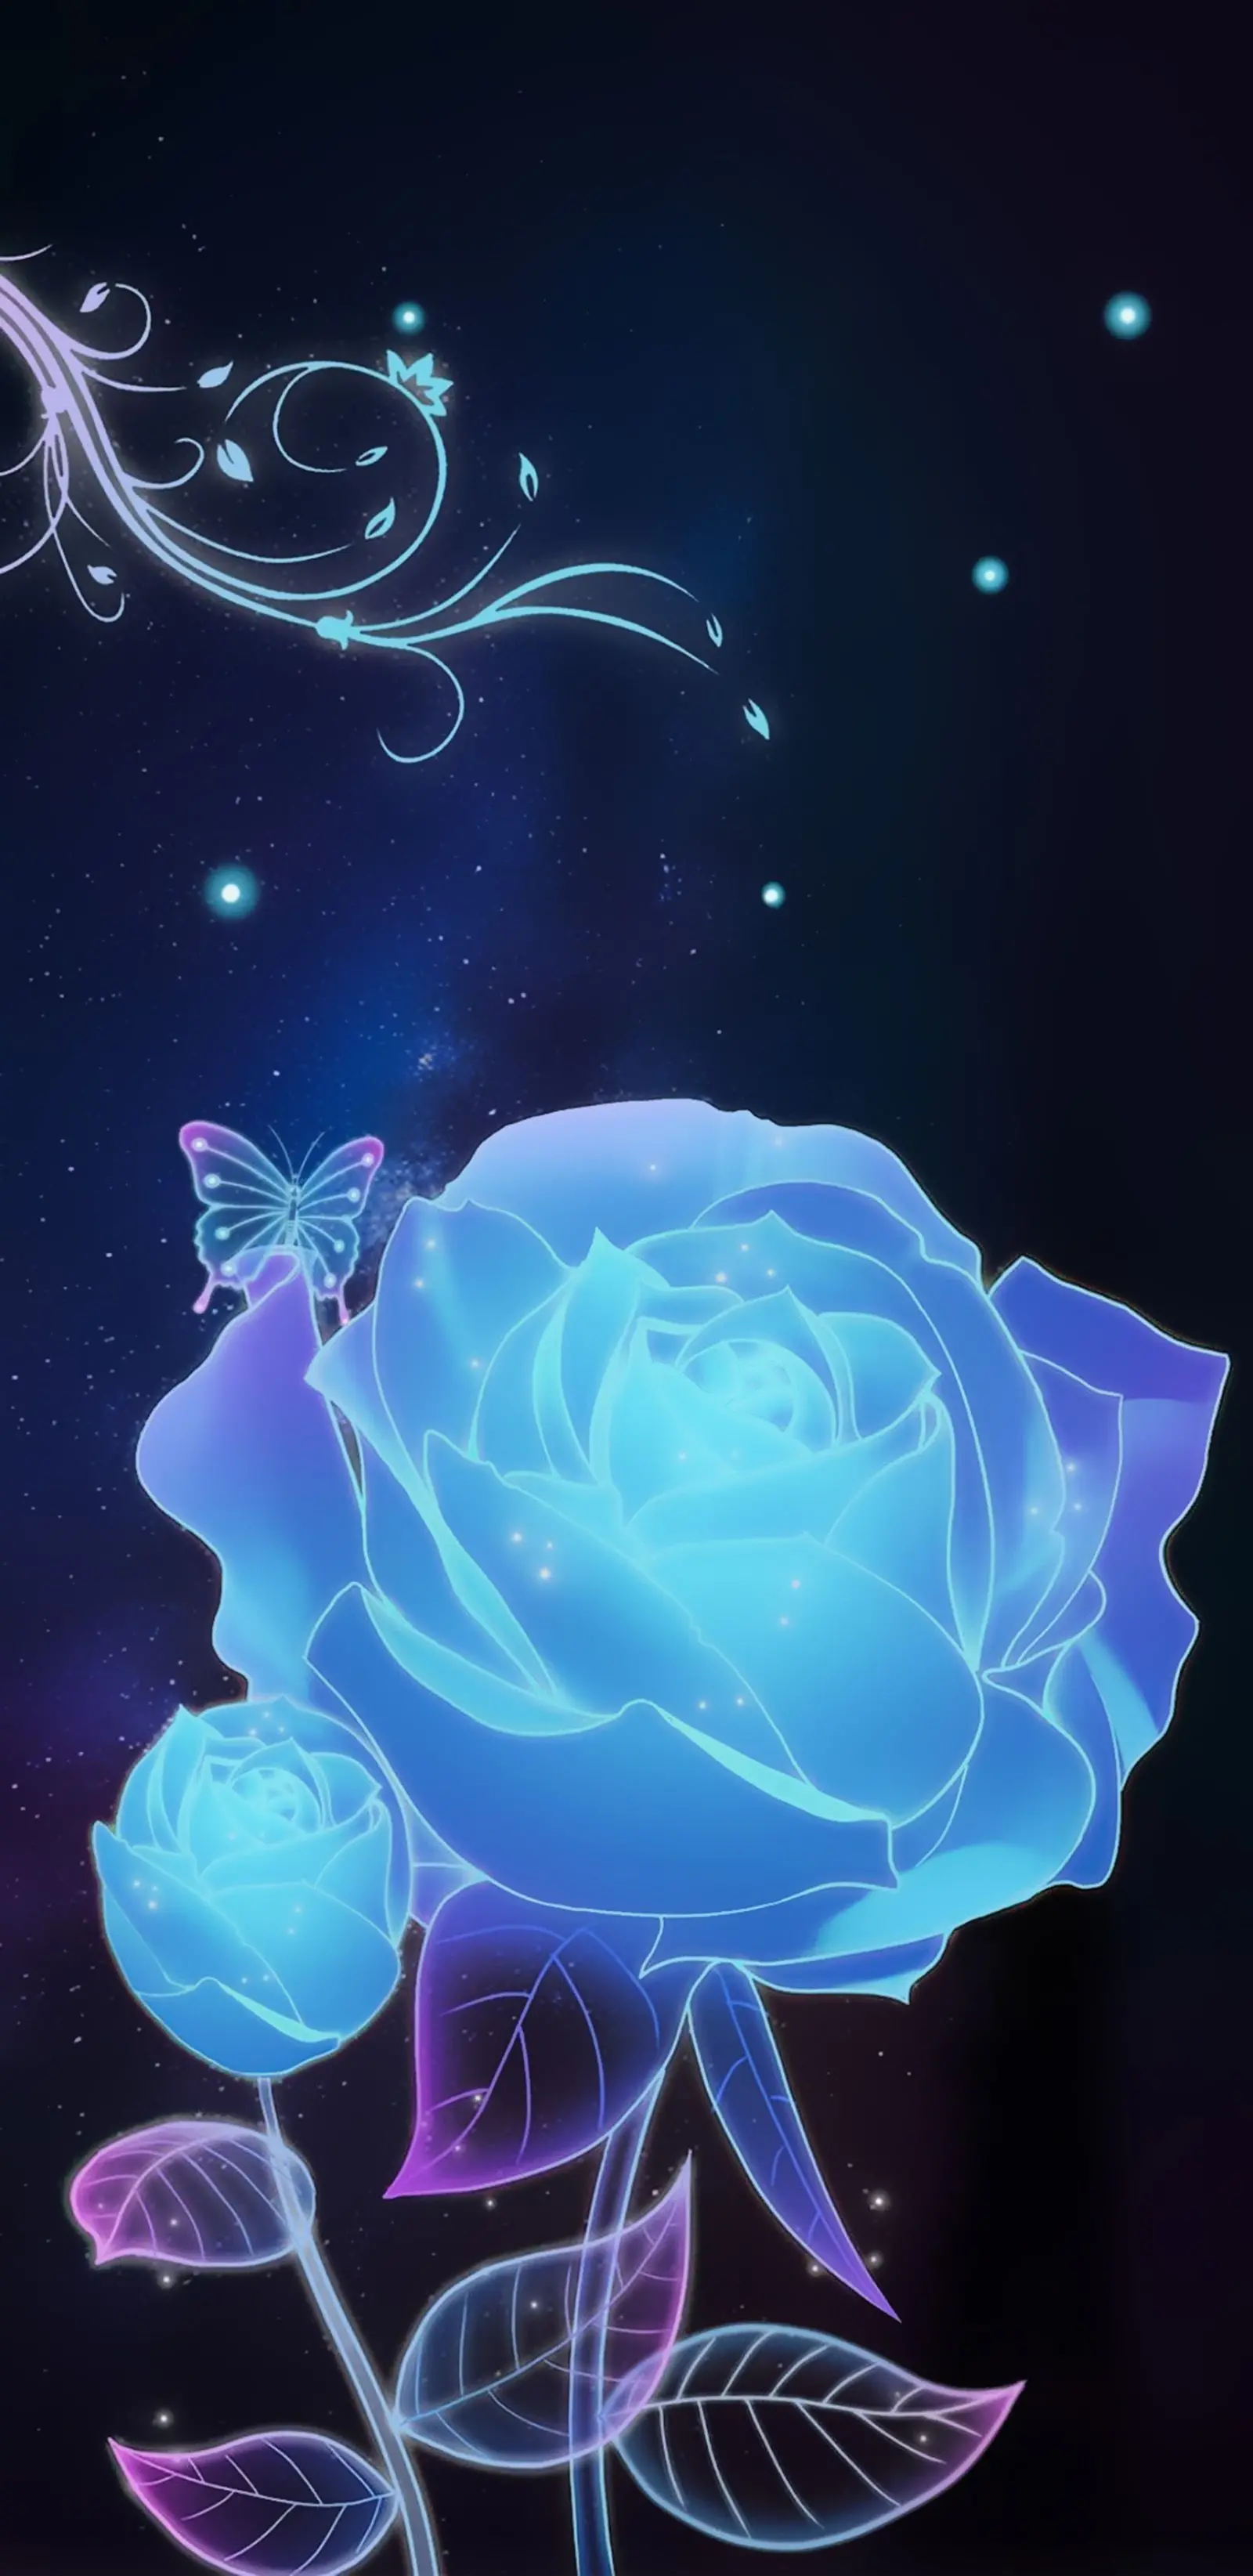 Wallpaper mawar biru terindah | Mawar biru, Wallpaper bunga, Gambar dinding untuk ponsel